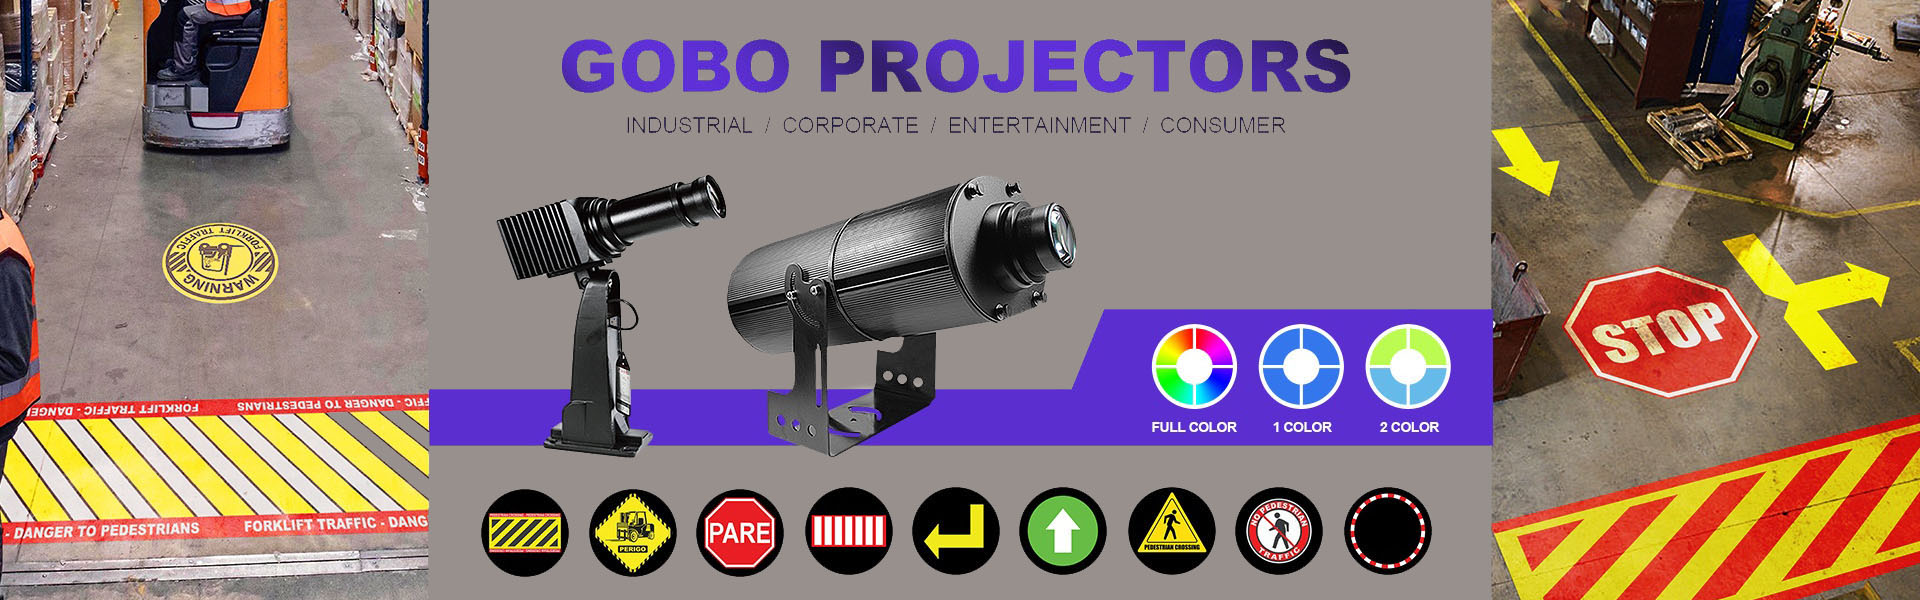 Gobo logo Projektor, LED Work Light, LED vysokozdvižné světlo,Wetech Electronic Technology Limited